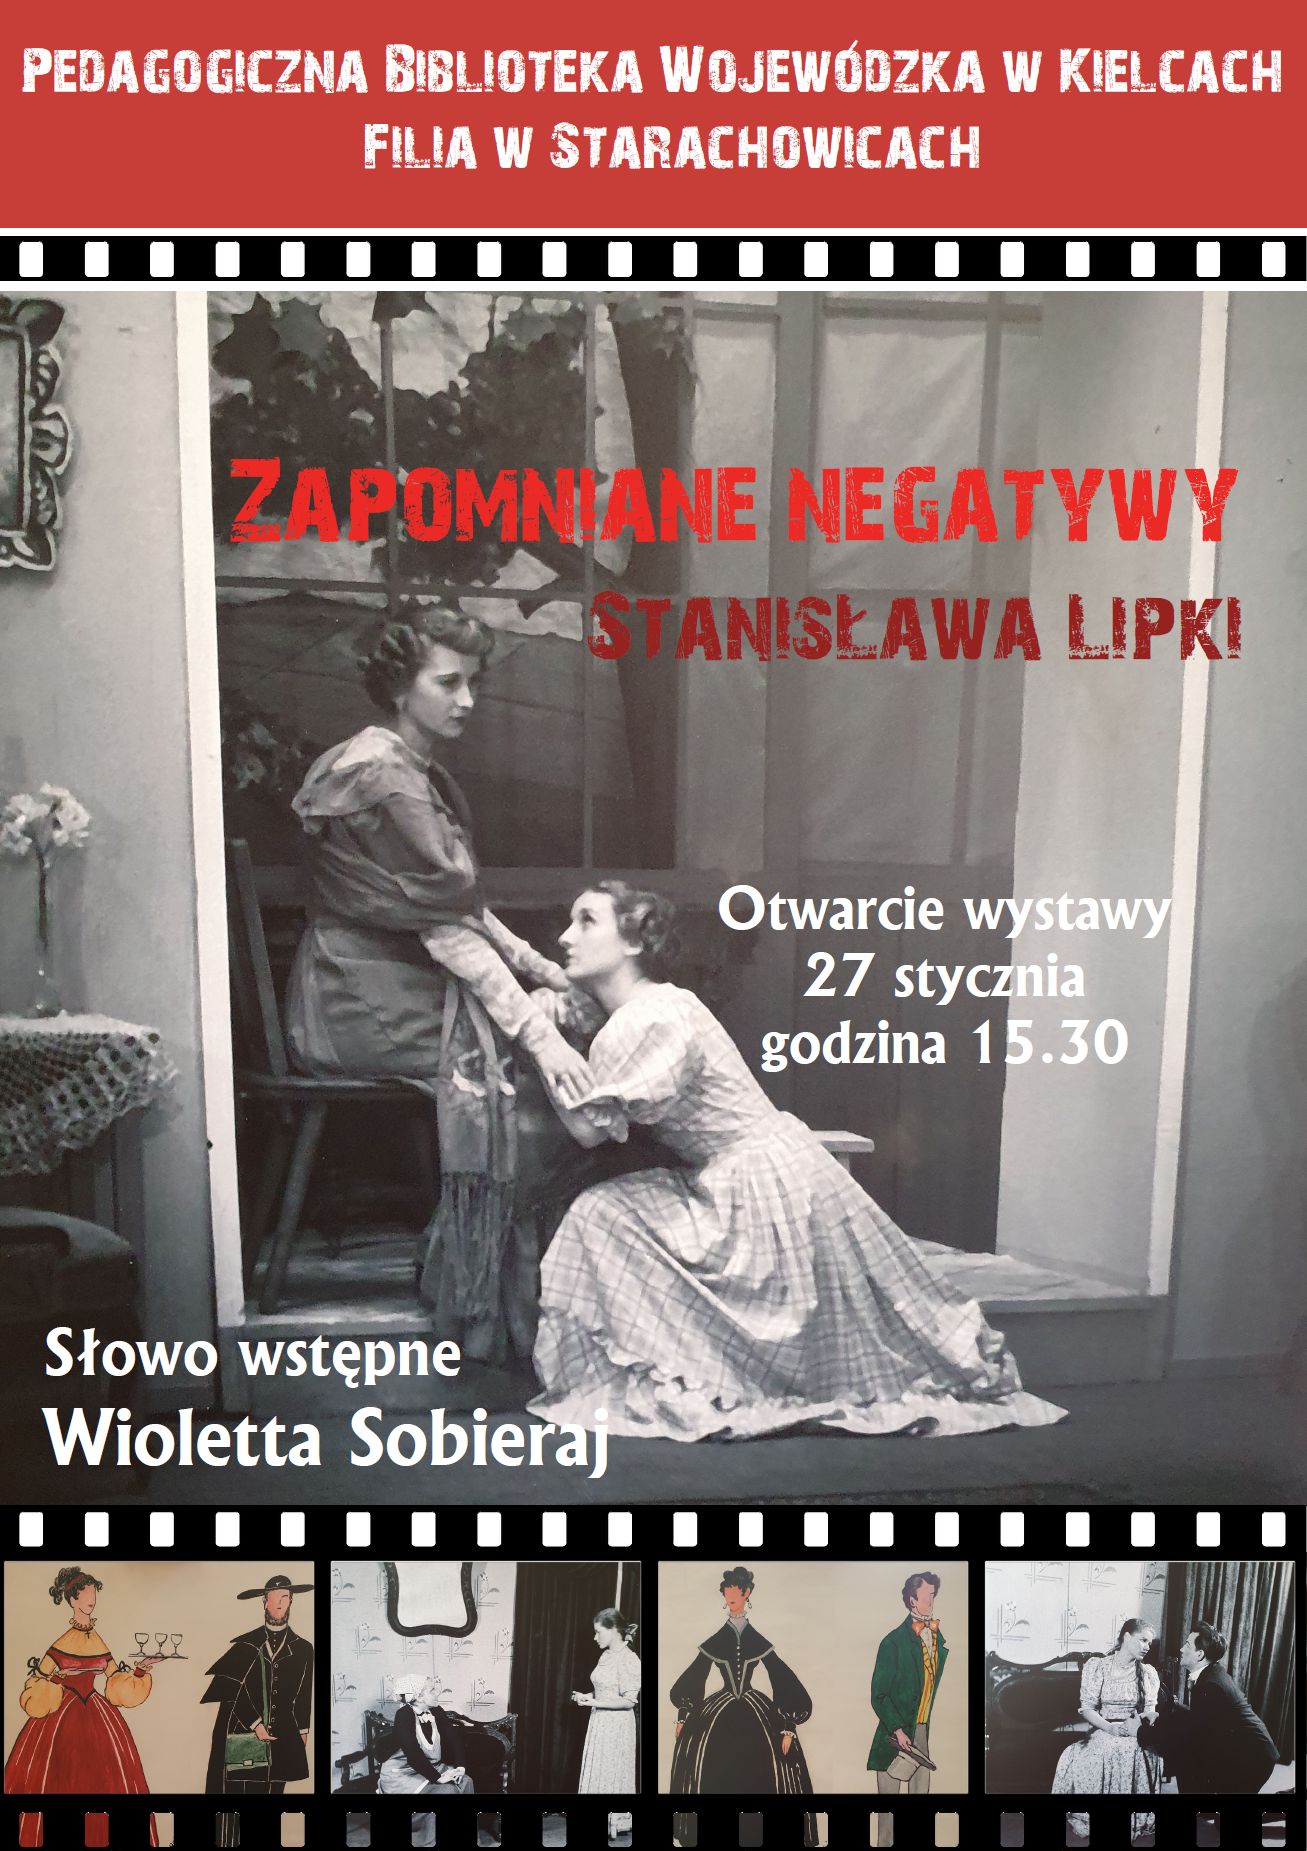 Wystawa fotografii – ,,Zapomniane negatywy Stanisława Lipki”